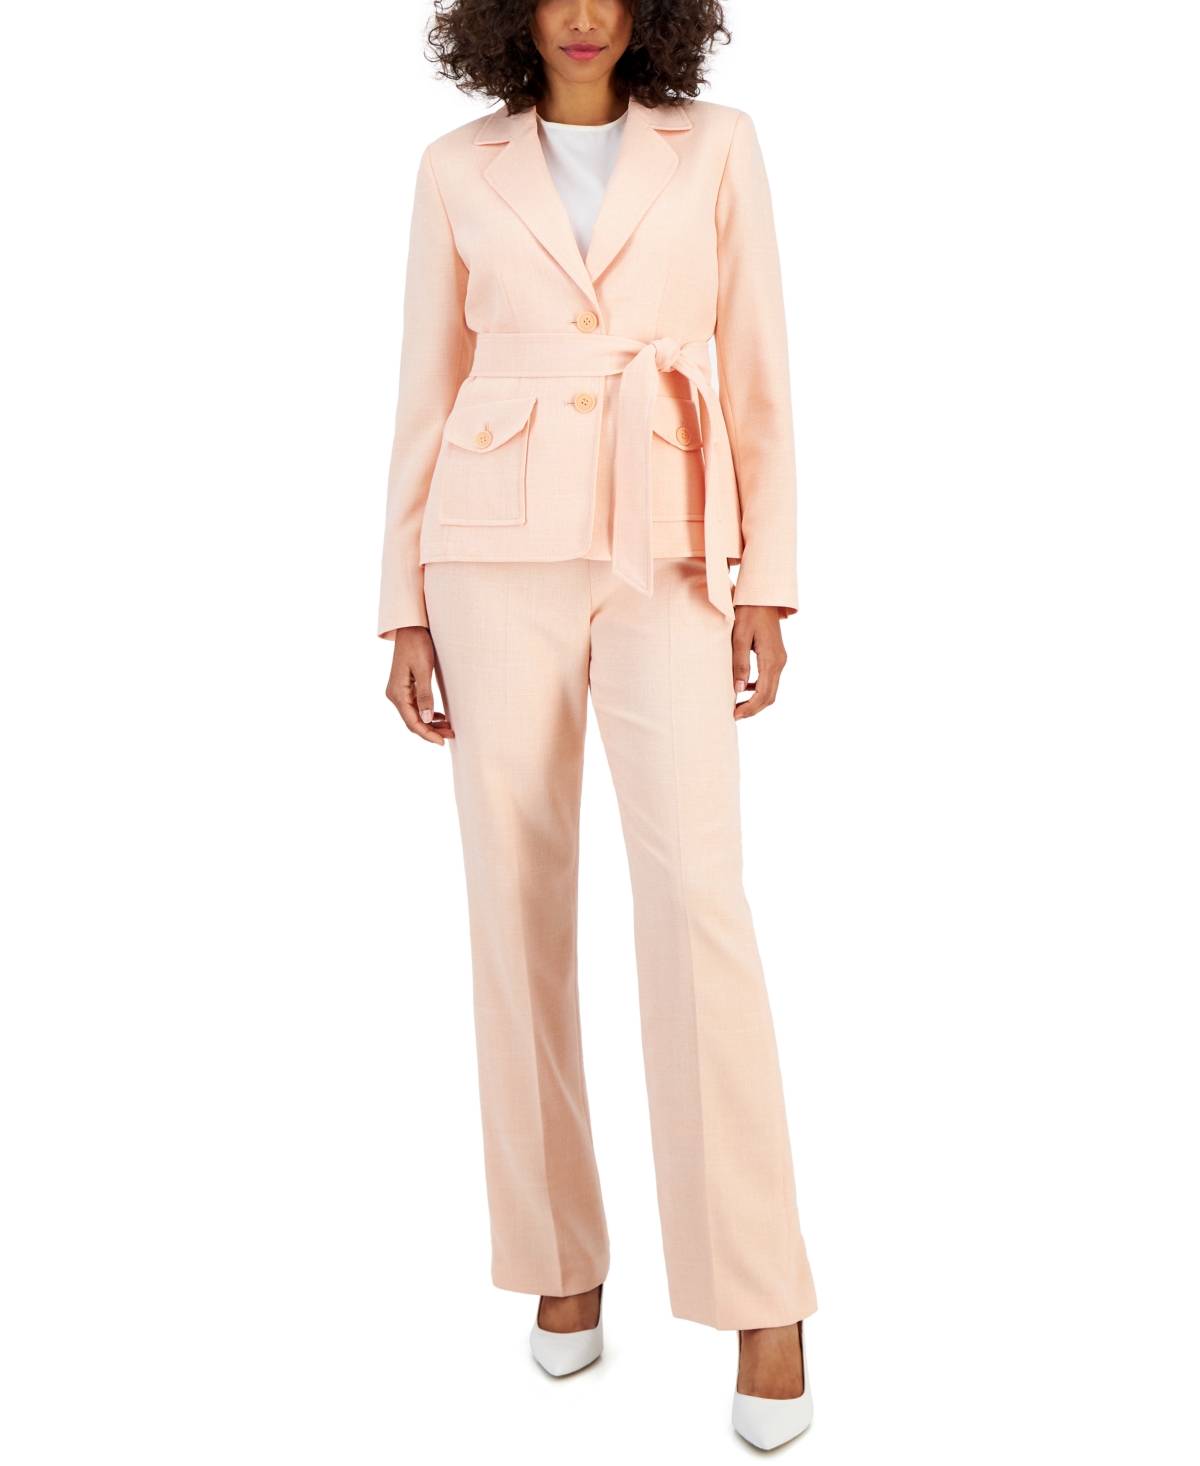 Women's Belted Safari Jacket Pantsuit, Regular & Petite Sizes - Navy/White